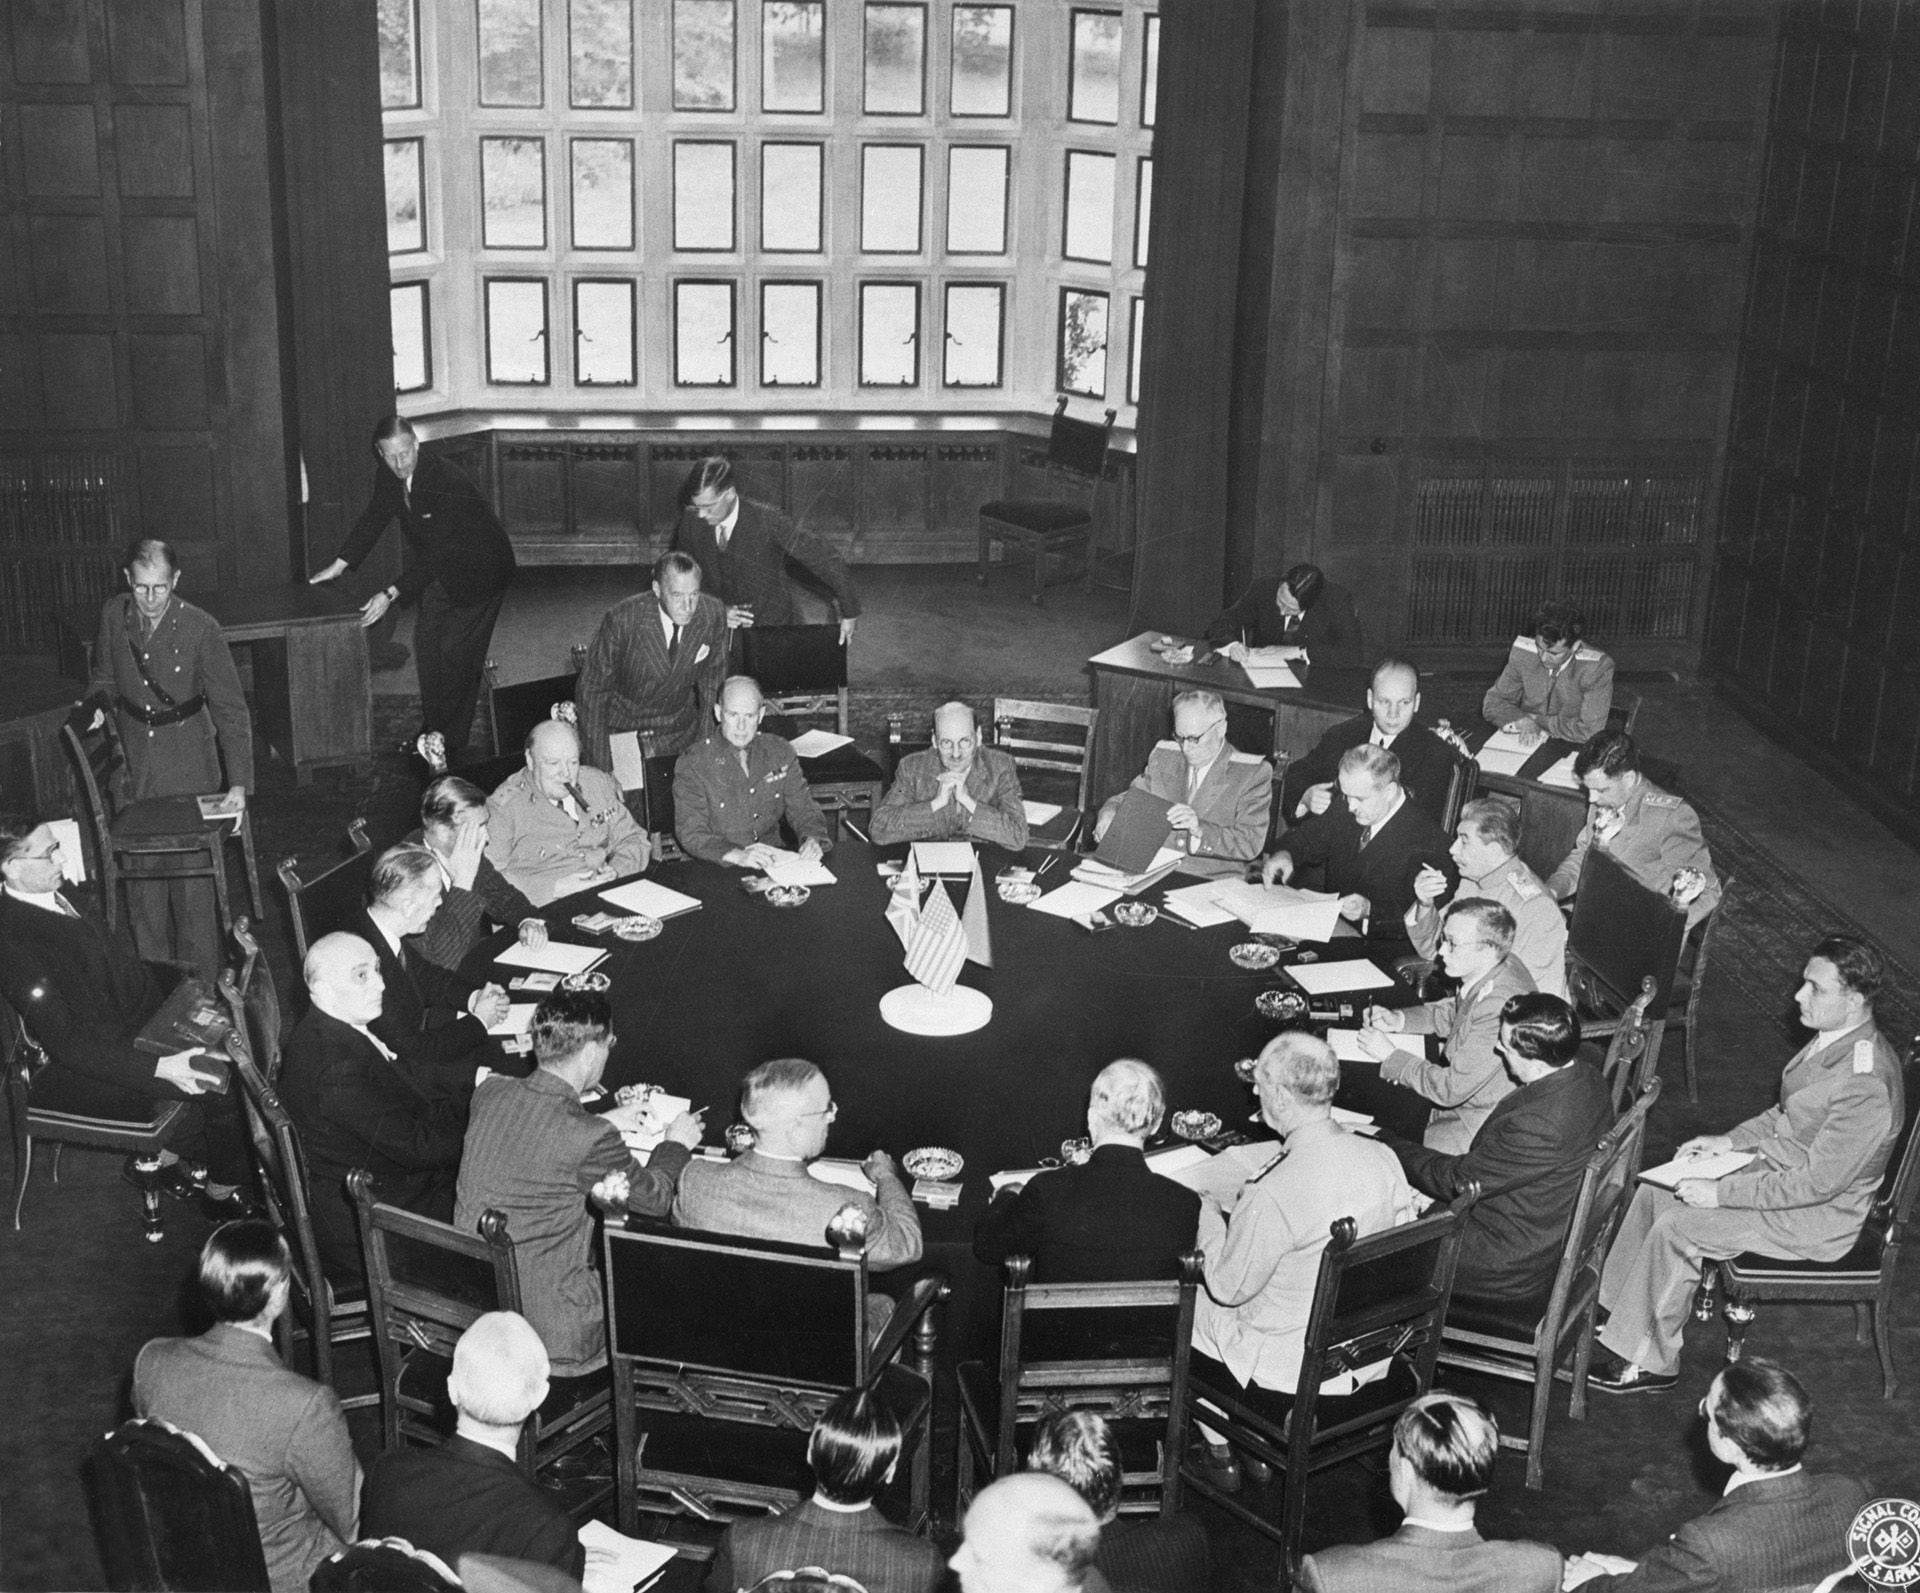 La conferencia de los tres grandes comienza en una sala del palacio de Potsdam, Alemania. El presidente Harry S. Truman está sentado de espaldas a la cámara, con asistentes a cada lado; el mariscal Joseph Stalin está sentado más a la derecha, mientras que el primer ministro Winston Churchill y su personal están a la izquierda (Getty Images)